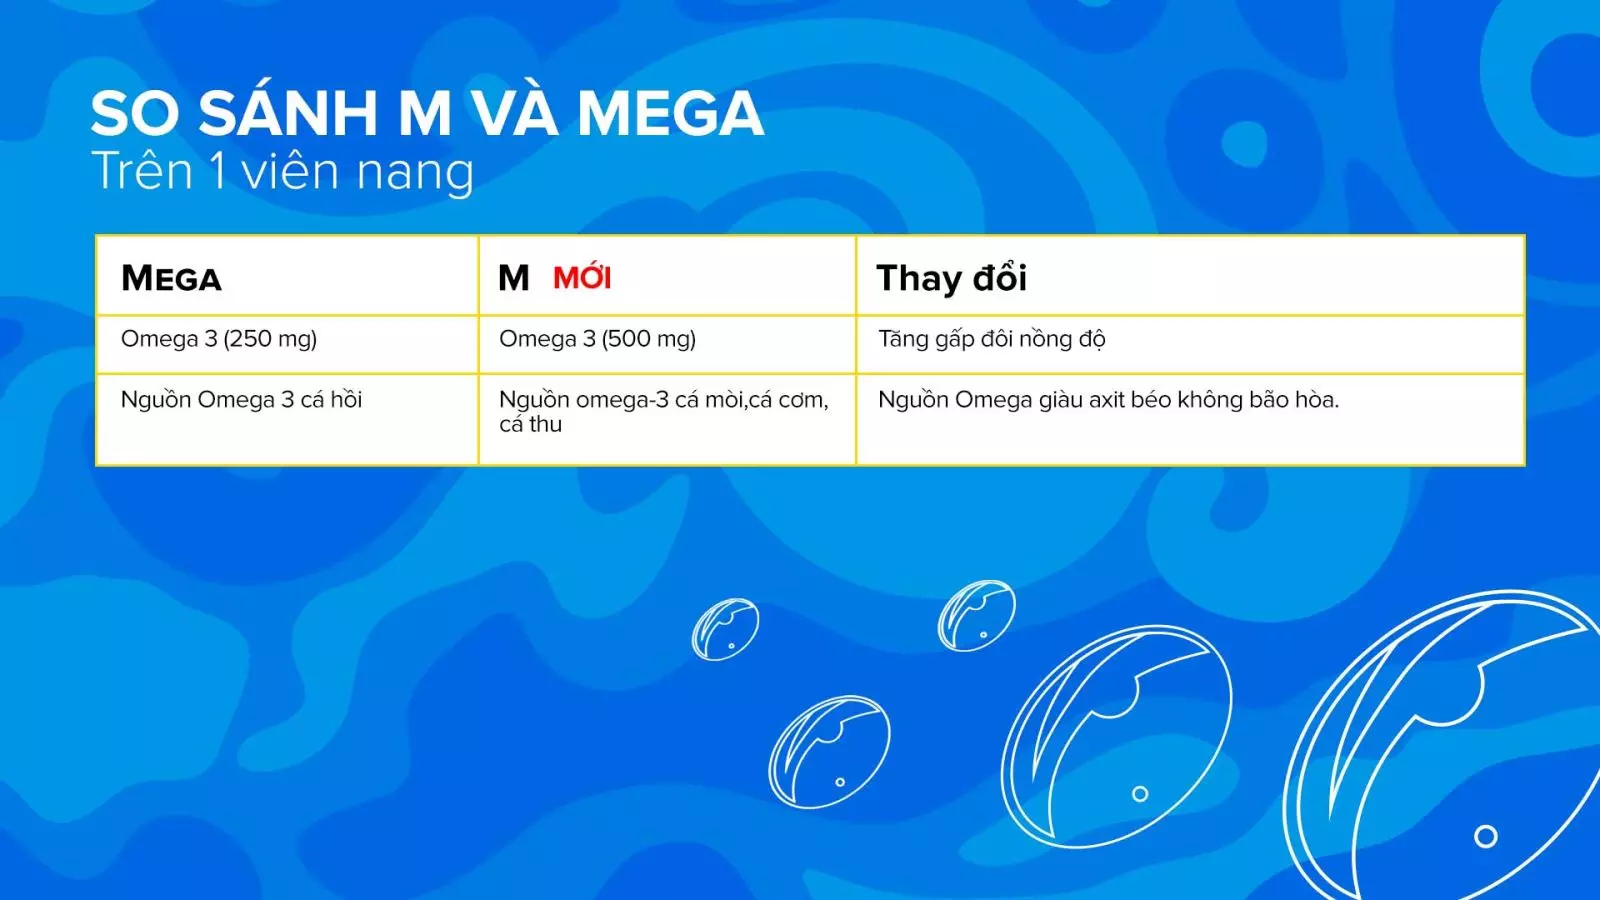 Bảng so sánh thành phần trong sản phẩm M và Mega